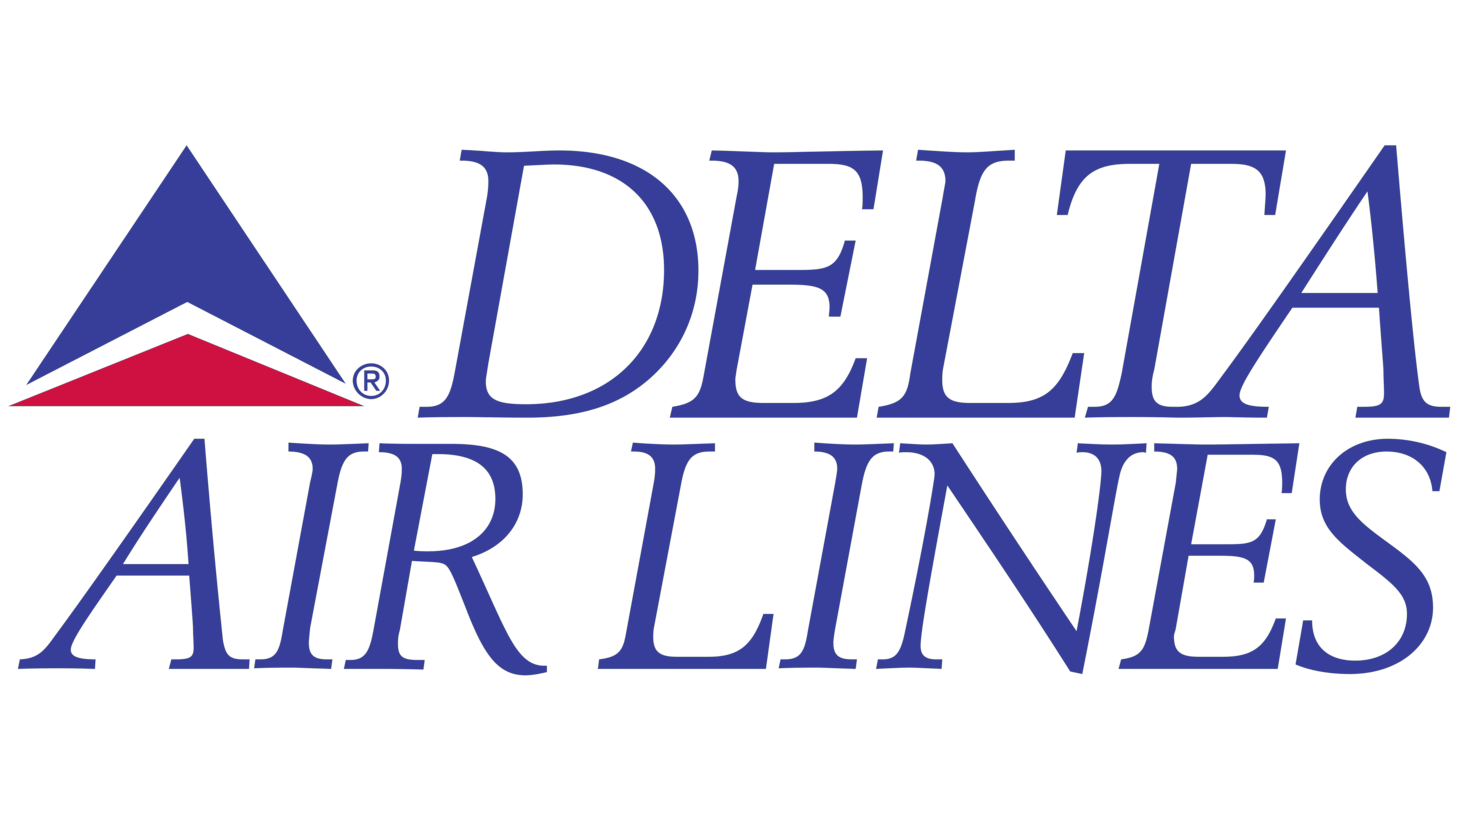 Delta air lines second era sign 1993 1995